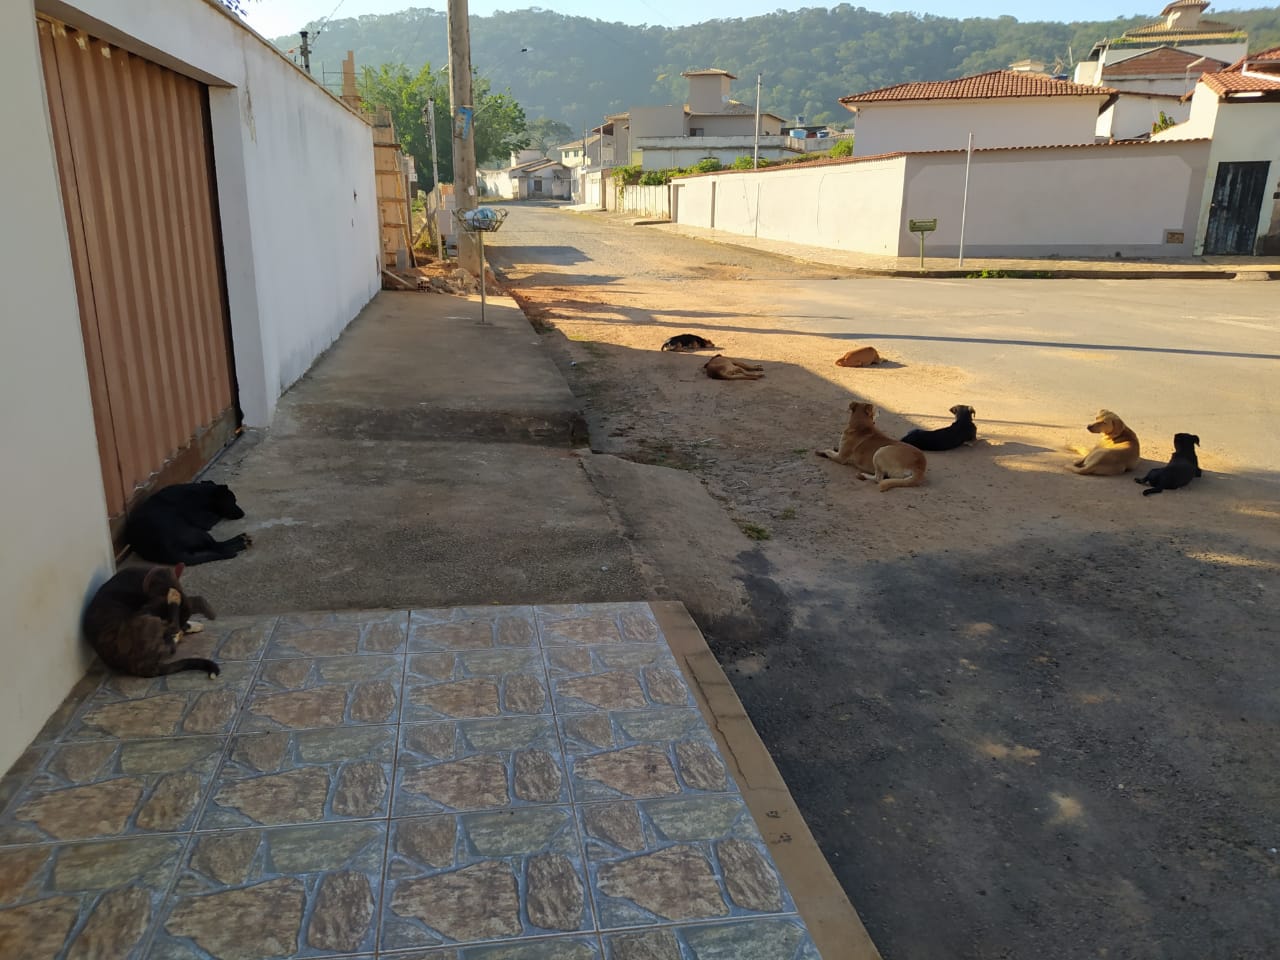 “Um verdadeiro canil”: morador denuncia abandono de cães no bairro Veredas; veja fotos!